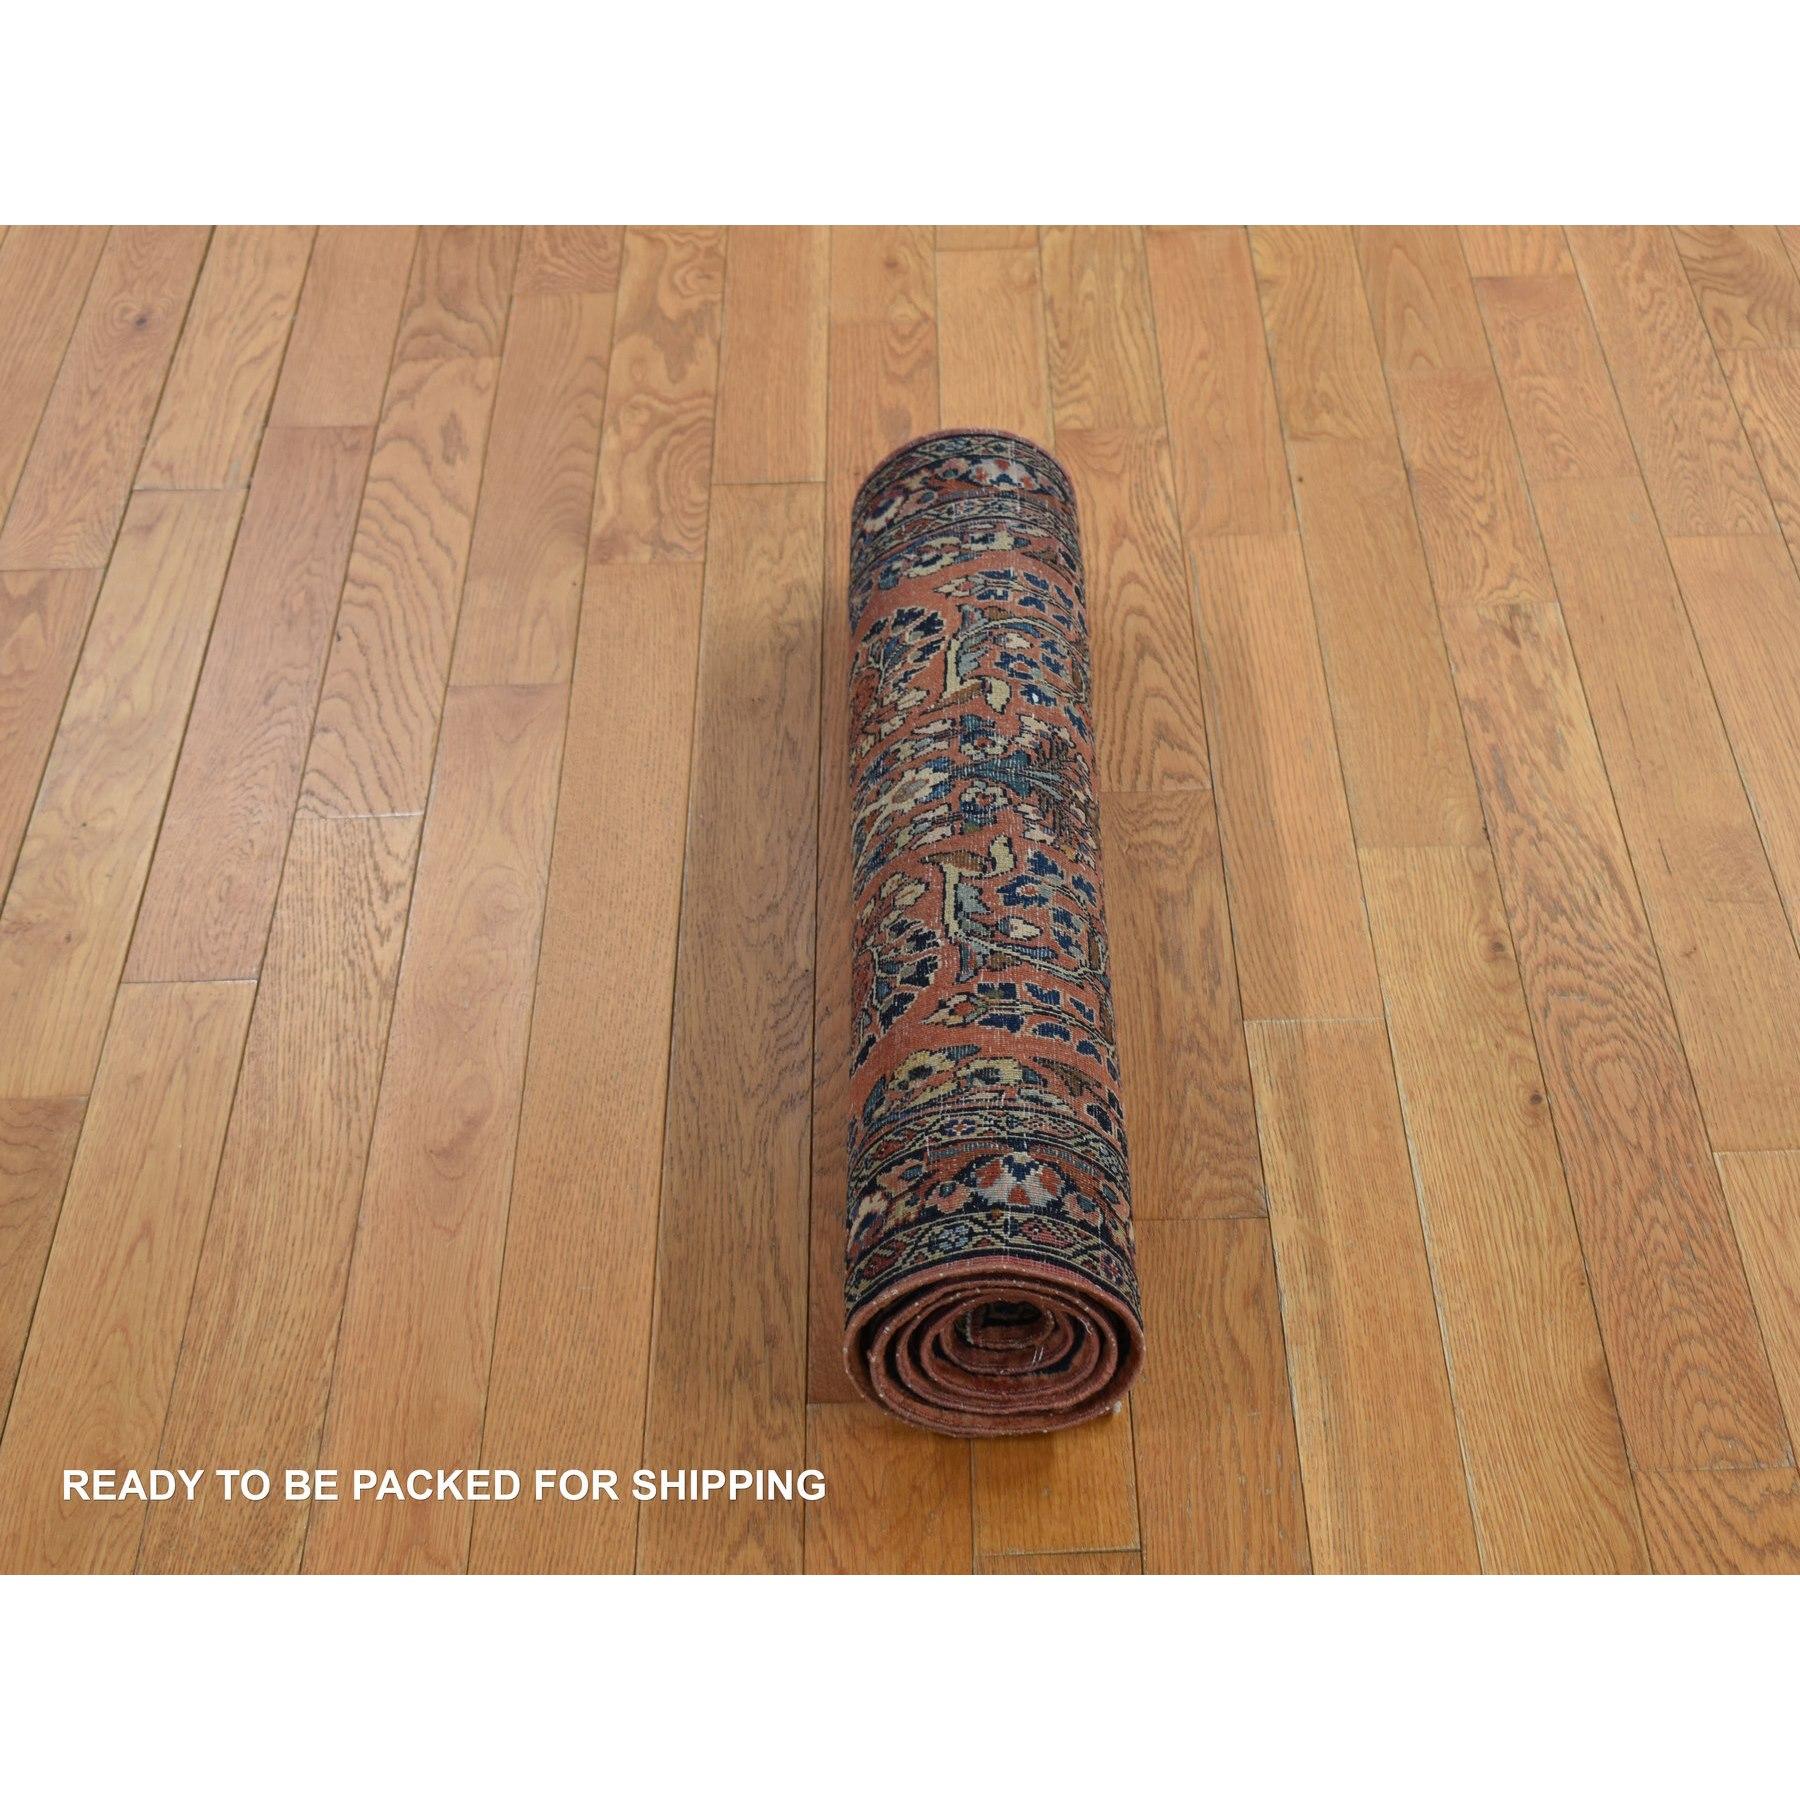 Roter antiker persischer Sarouk-Teppich in Rot, voller Flor, sauber und weich, handgeknüpft, 2'6